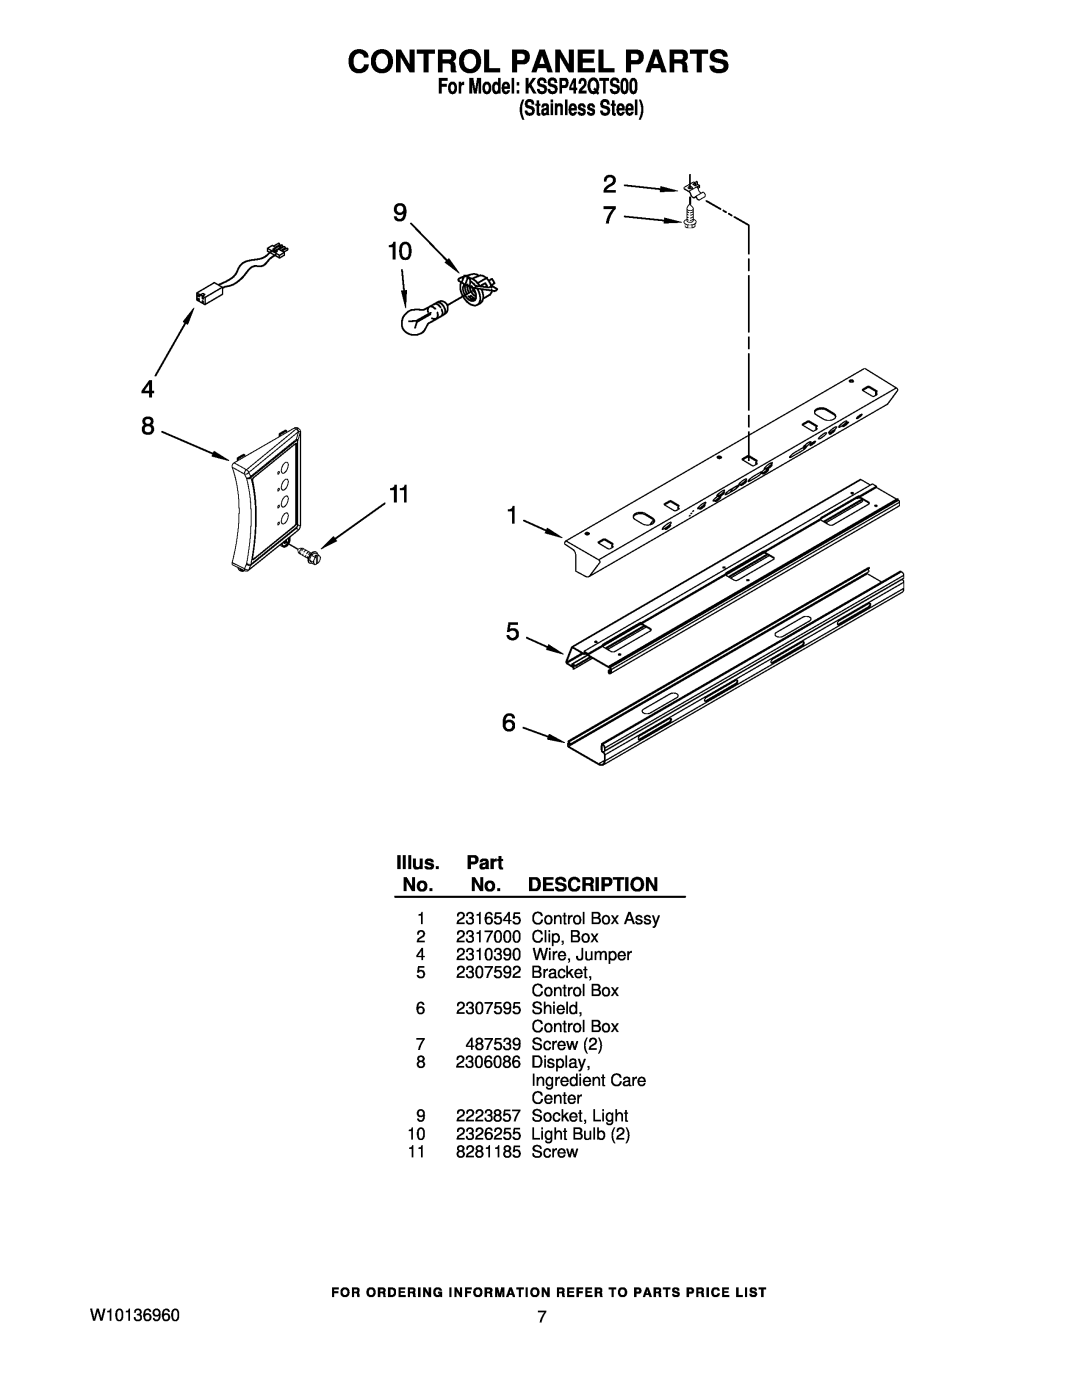 KitchenAid manual Control Panel Parts, For Model KSSP42QTS00 Stainless Steel, Illus. Part No. No. DESCRIPTION 